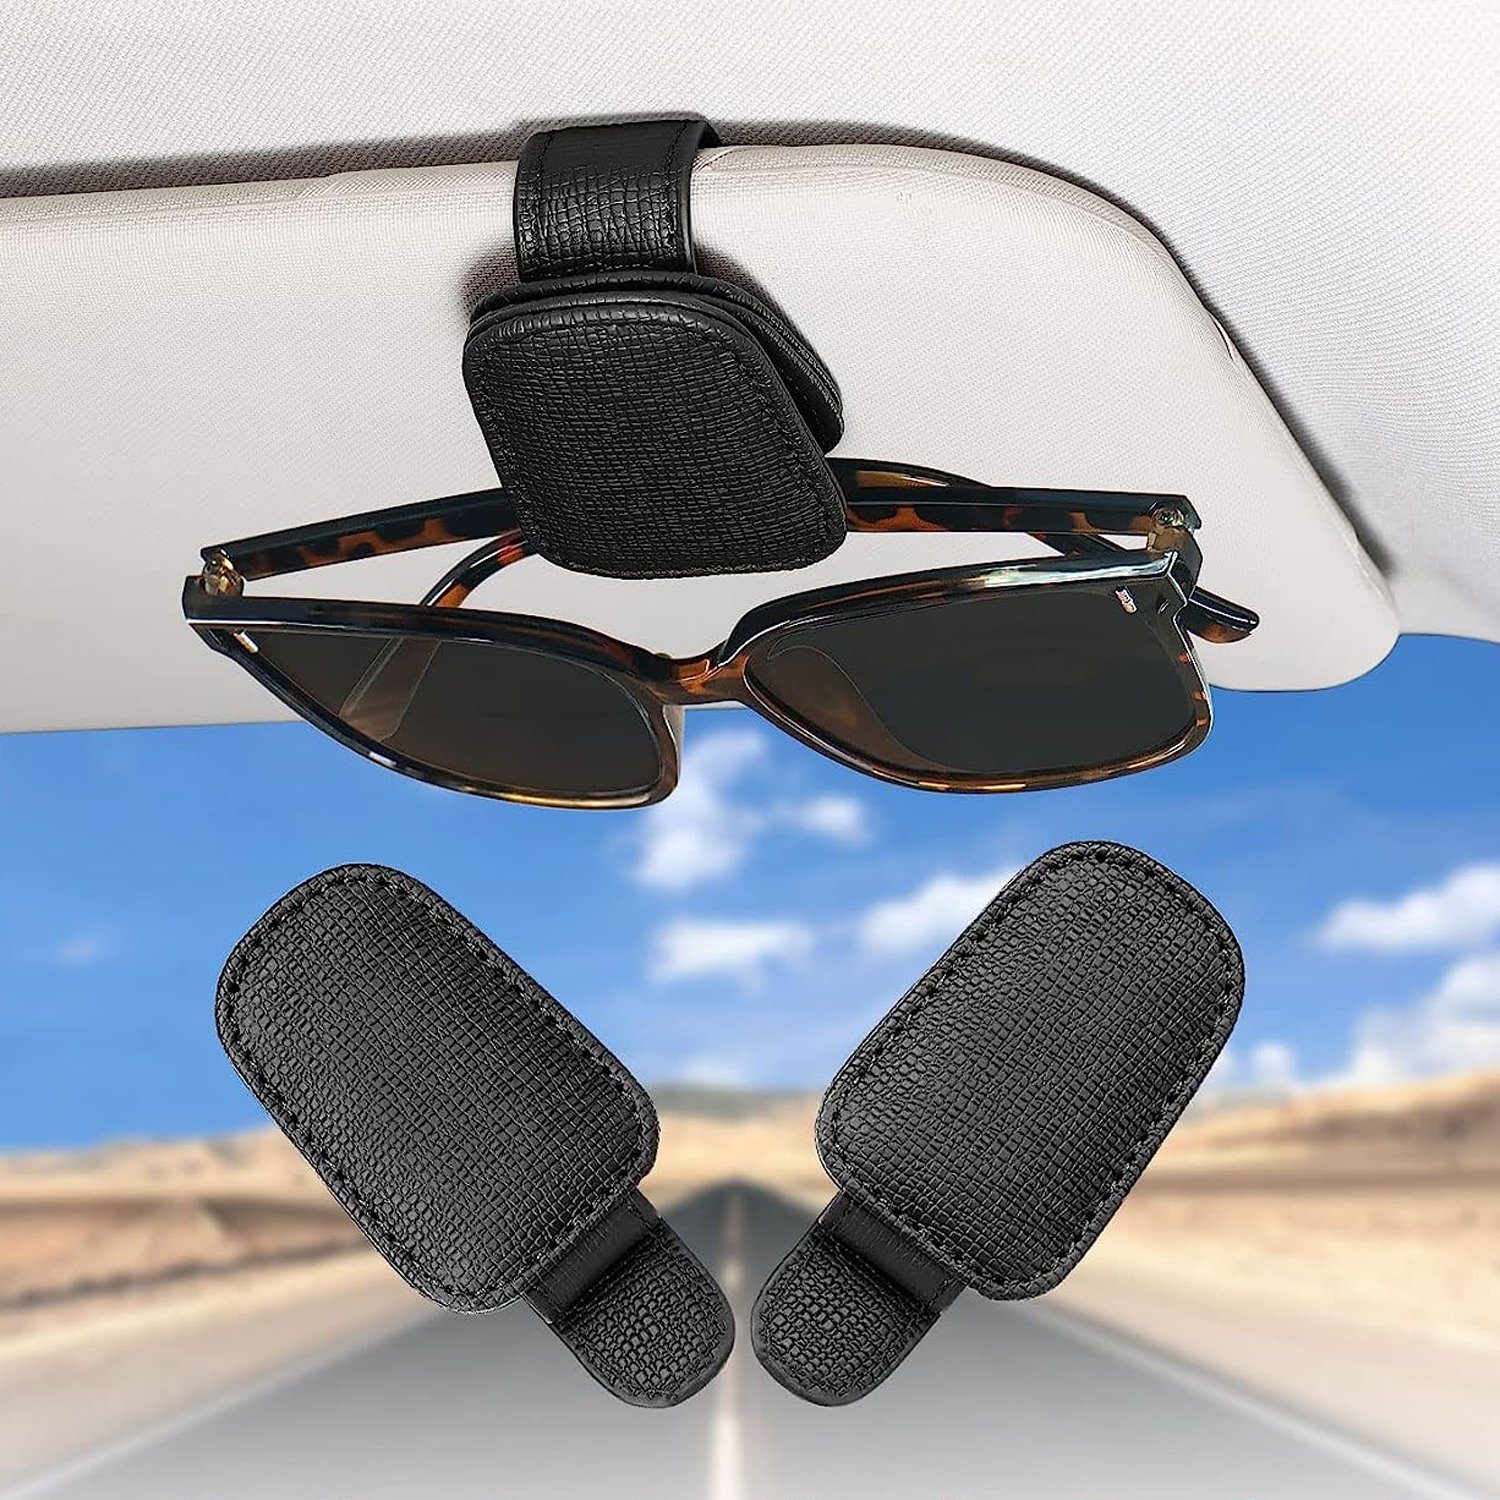 Brillenhalter NUODWELL Sonnenbrillenhalterung 2 Autosonnenschutz Auto Pack Sonnenblende, Visier Schwarz